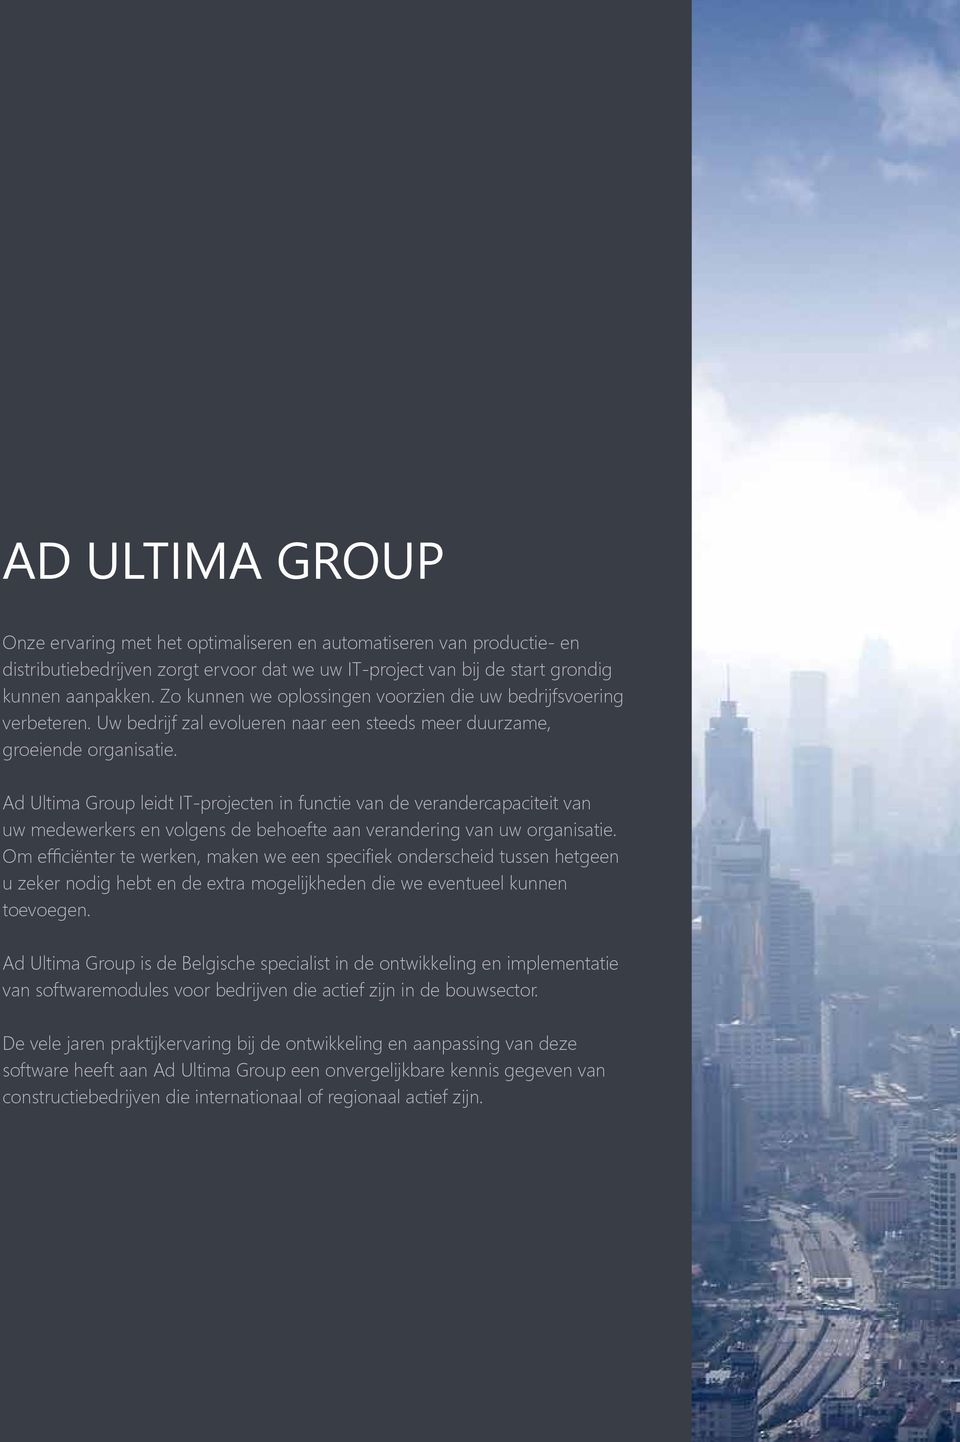 Ad Ultima Group leidt IT-projecten in functie van de verandercapaciteit van uw medewerkers en volgens de behoefte aan verandering van uw organisatie.